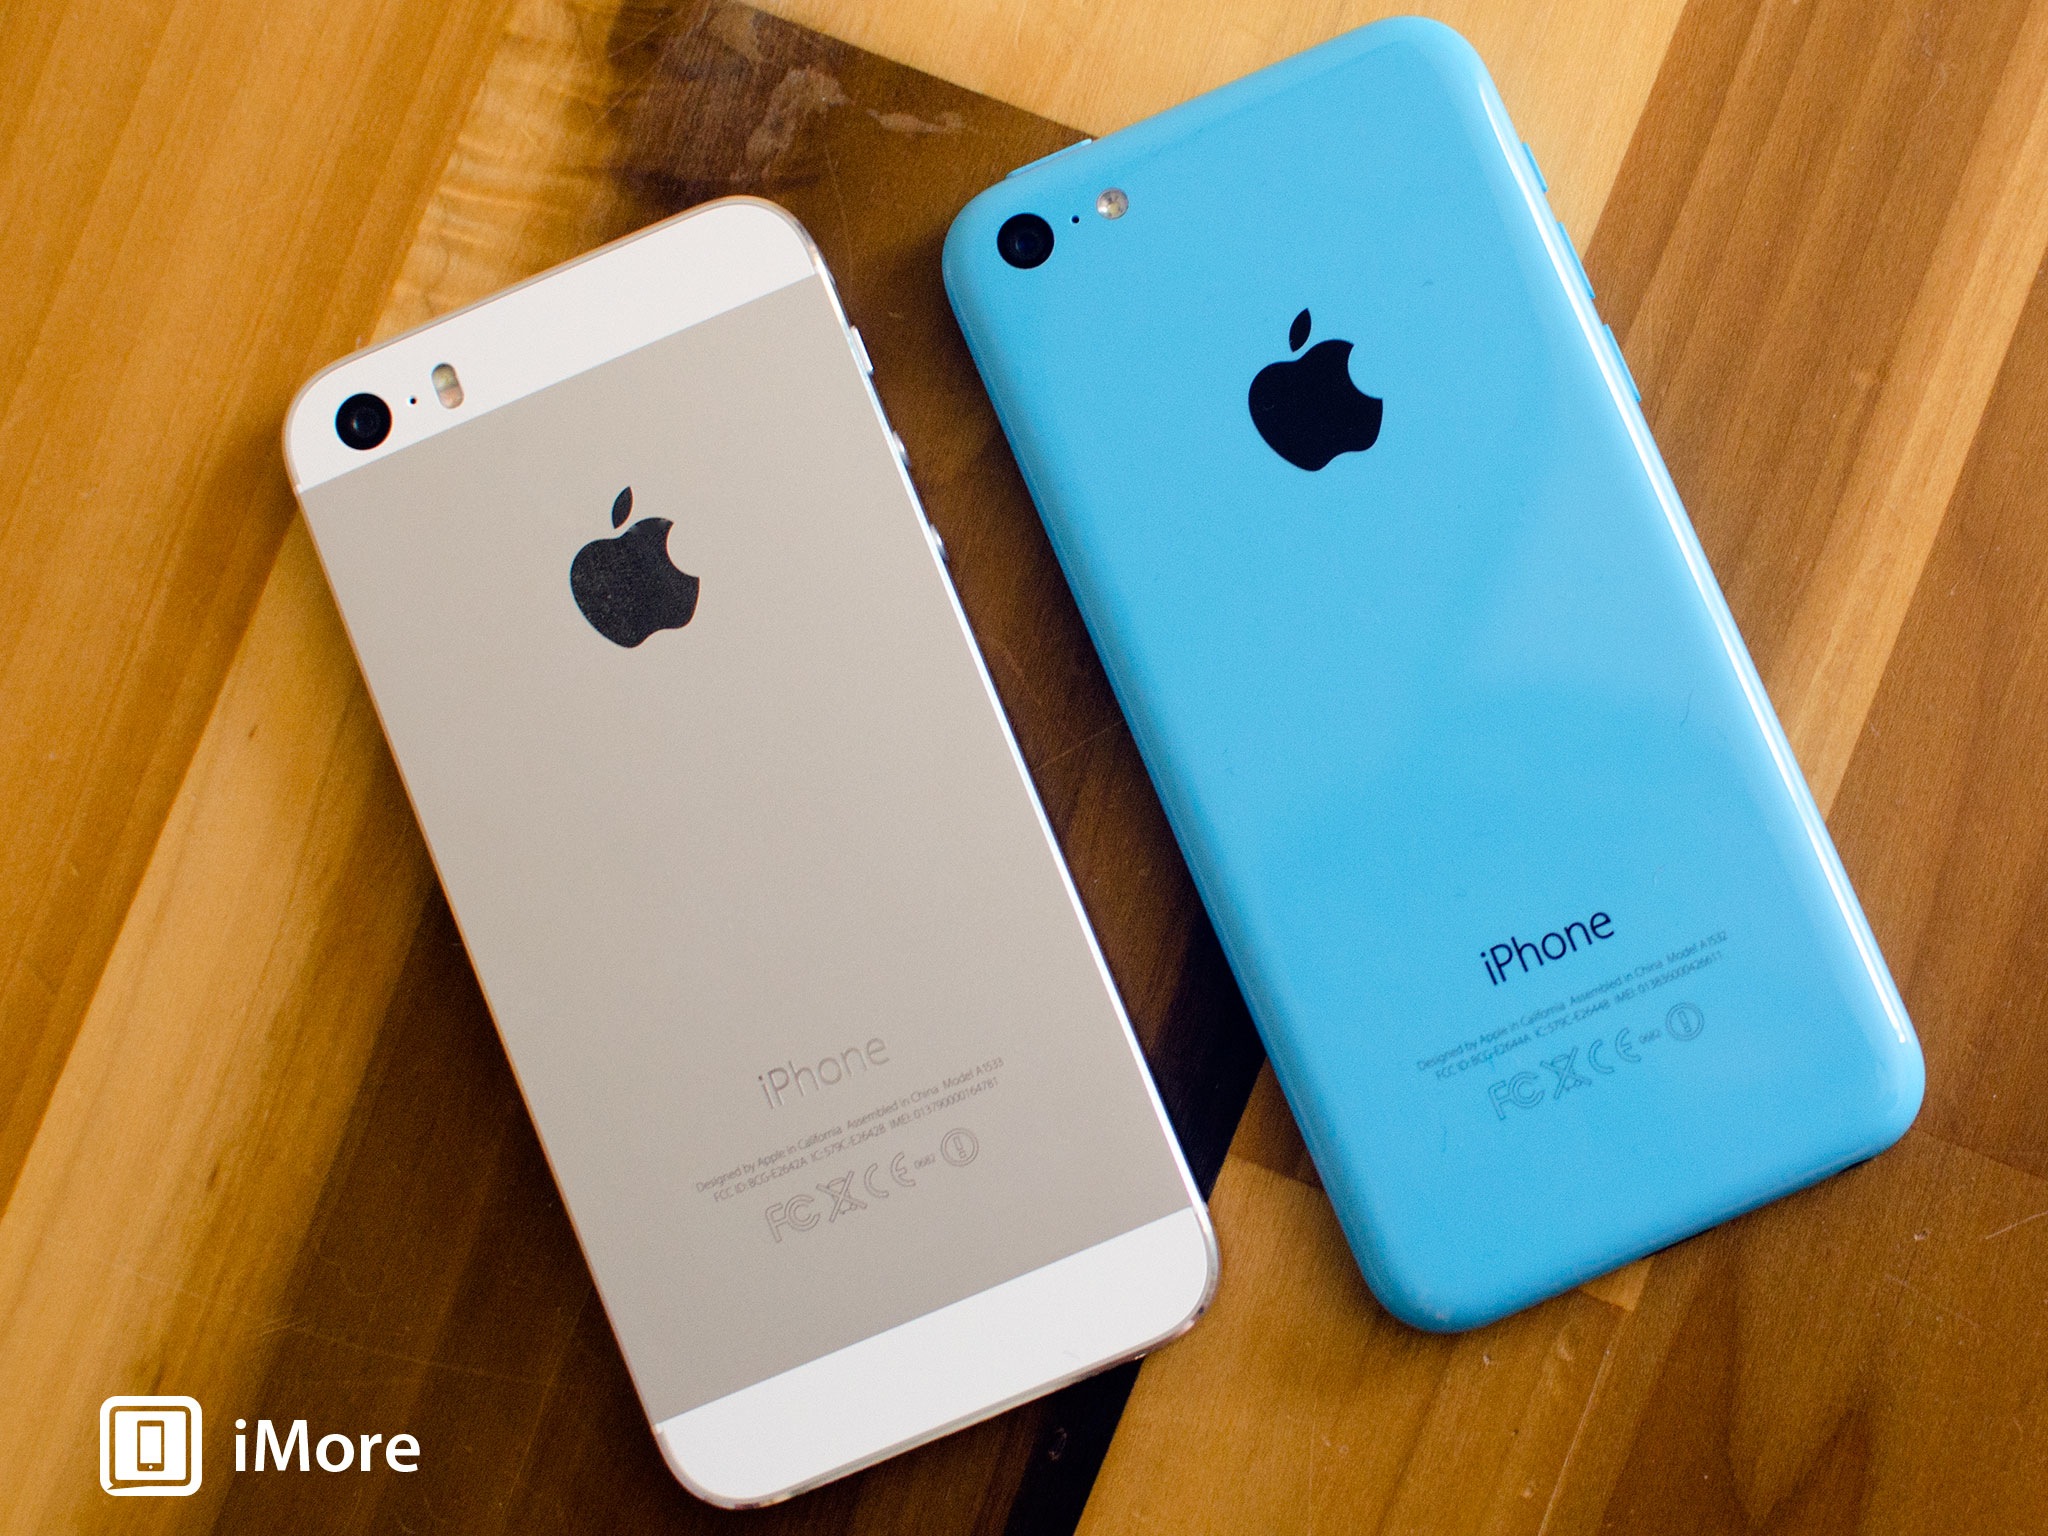 iPhone 5s vs. iPhone 5c vs. iPhone 4s: Which iPhone should you get?